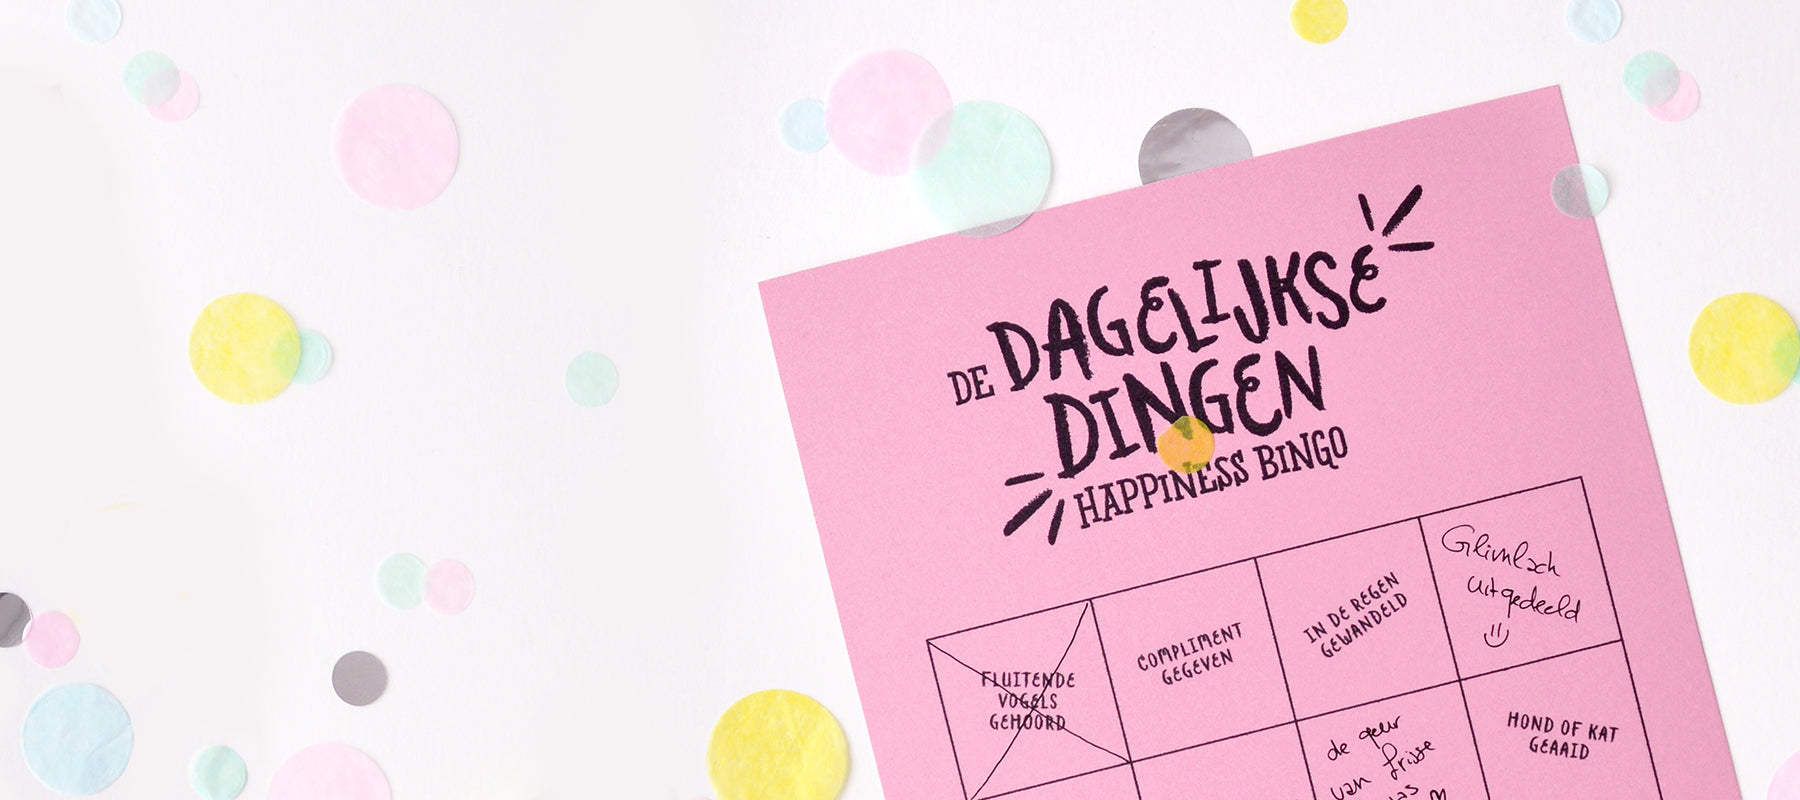 De ’dagelijkse dingen’ happiness bingo